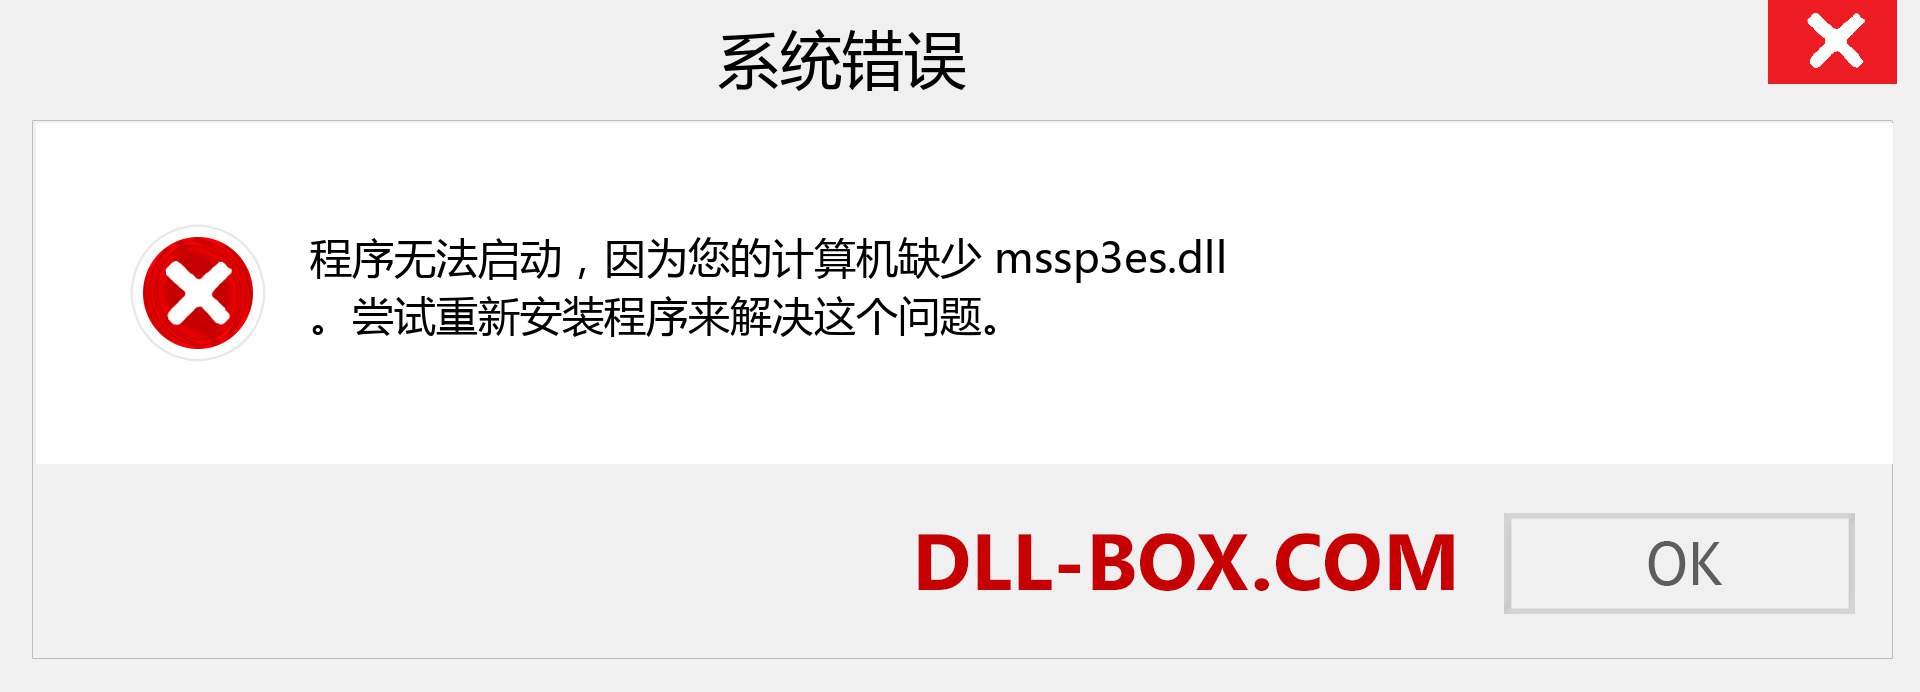 mssp3es.dll 文件丢失？。 适用于 Windows 7、8、10 的下载 - 修复 Windows、照片、图像上的 mssp3es dll 丢失错误